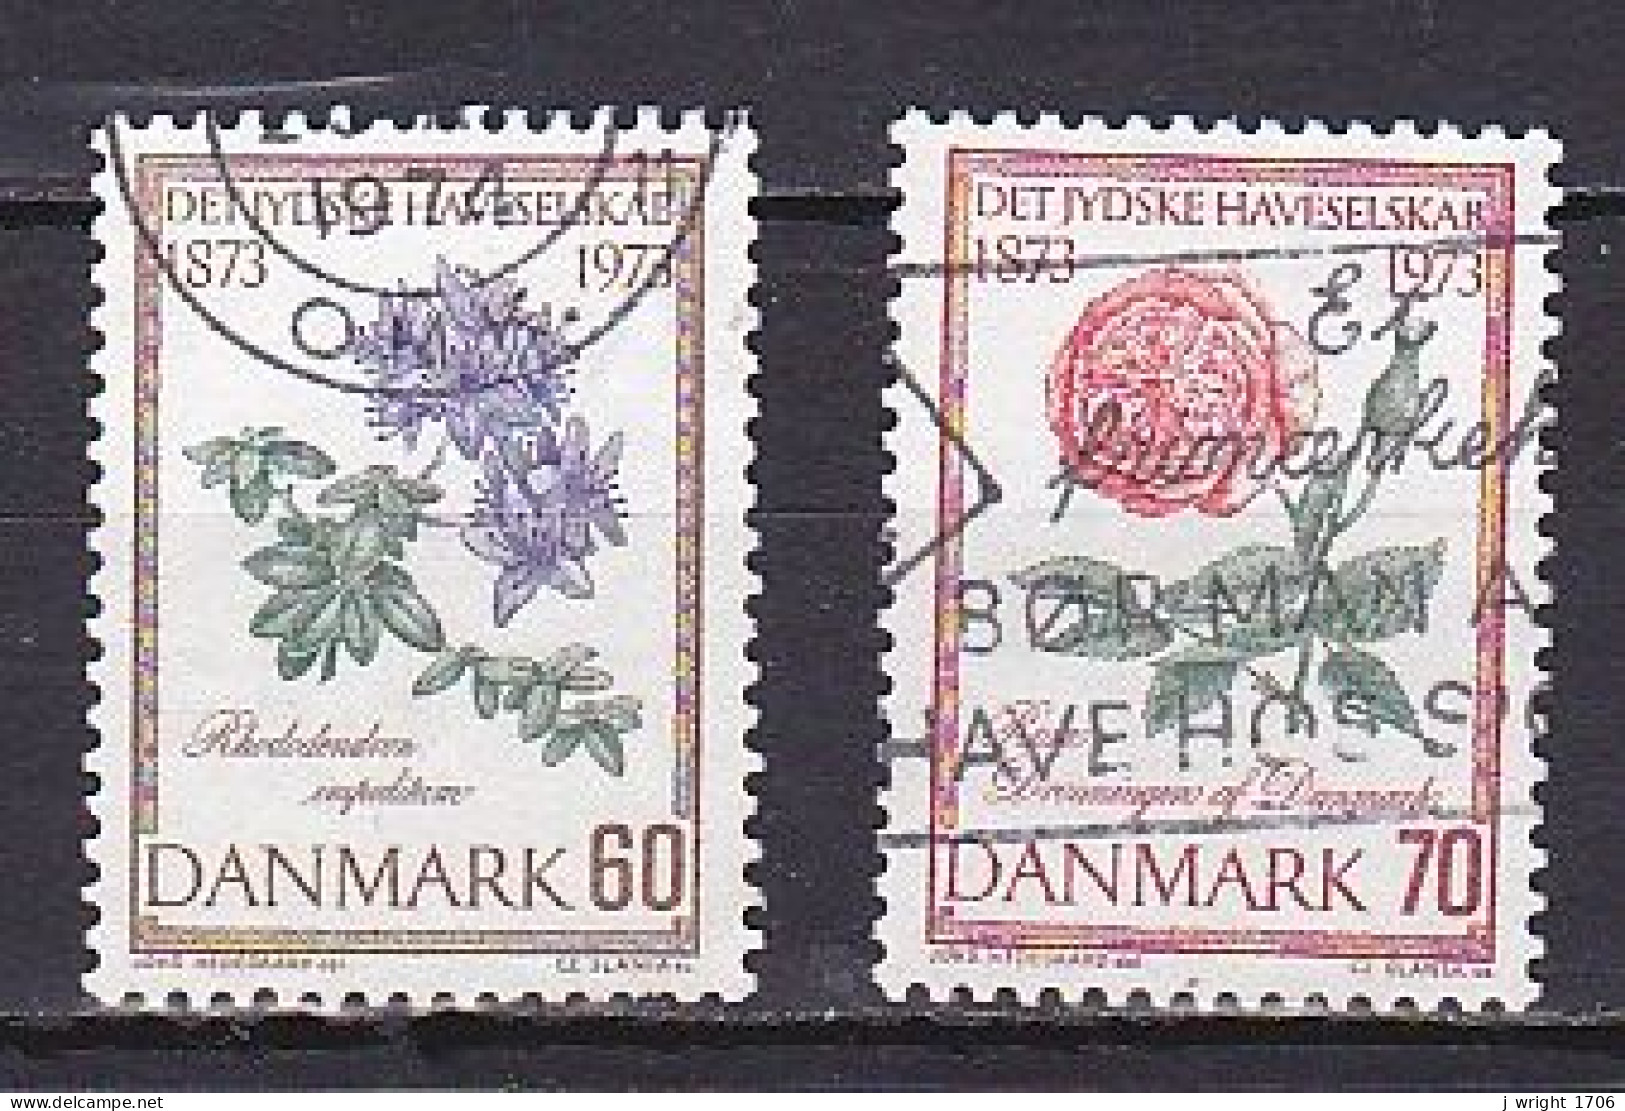 Denmark, 1973, Jutland Horticultural Society Centenary, Set, USED - Usati